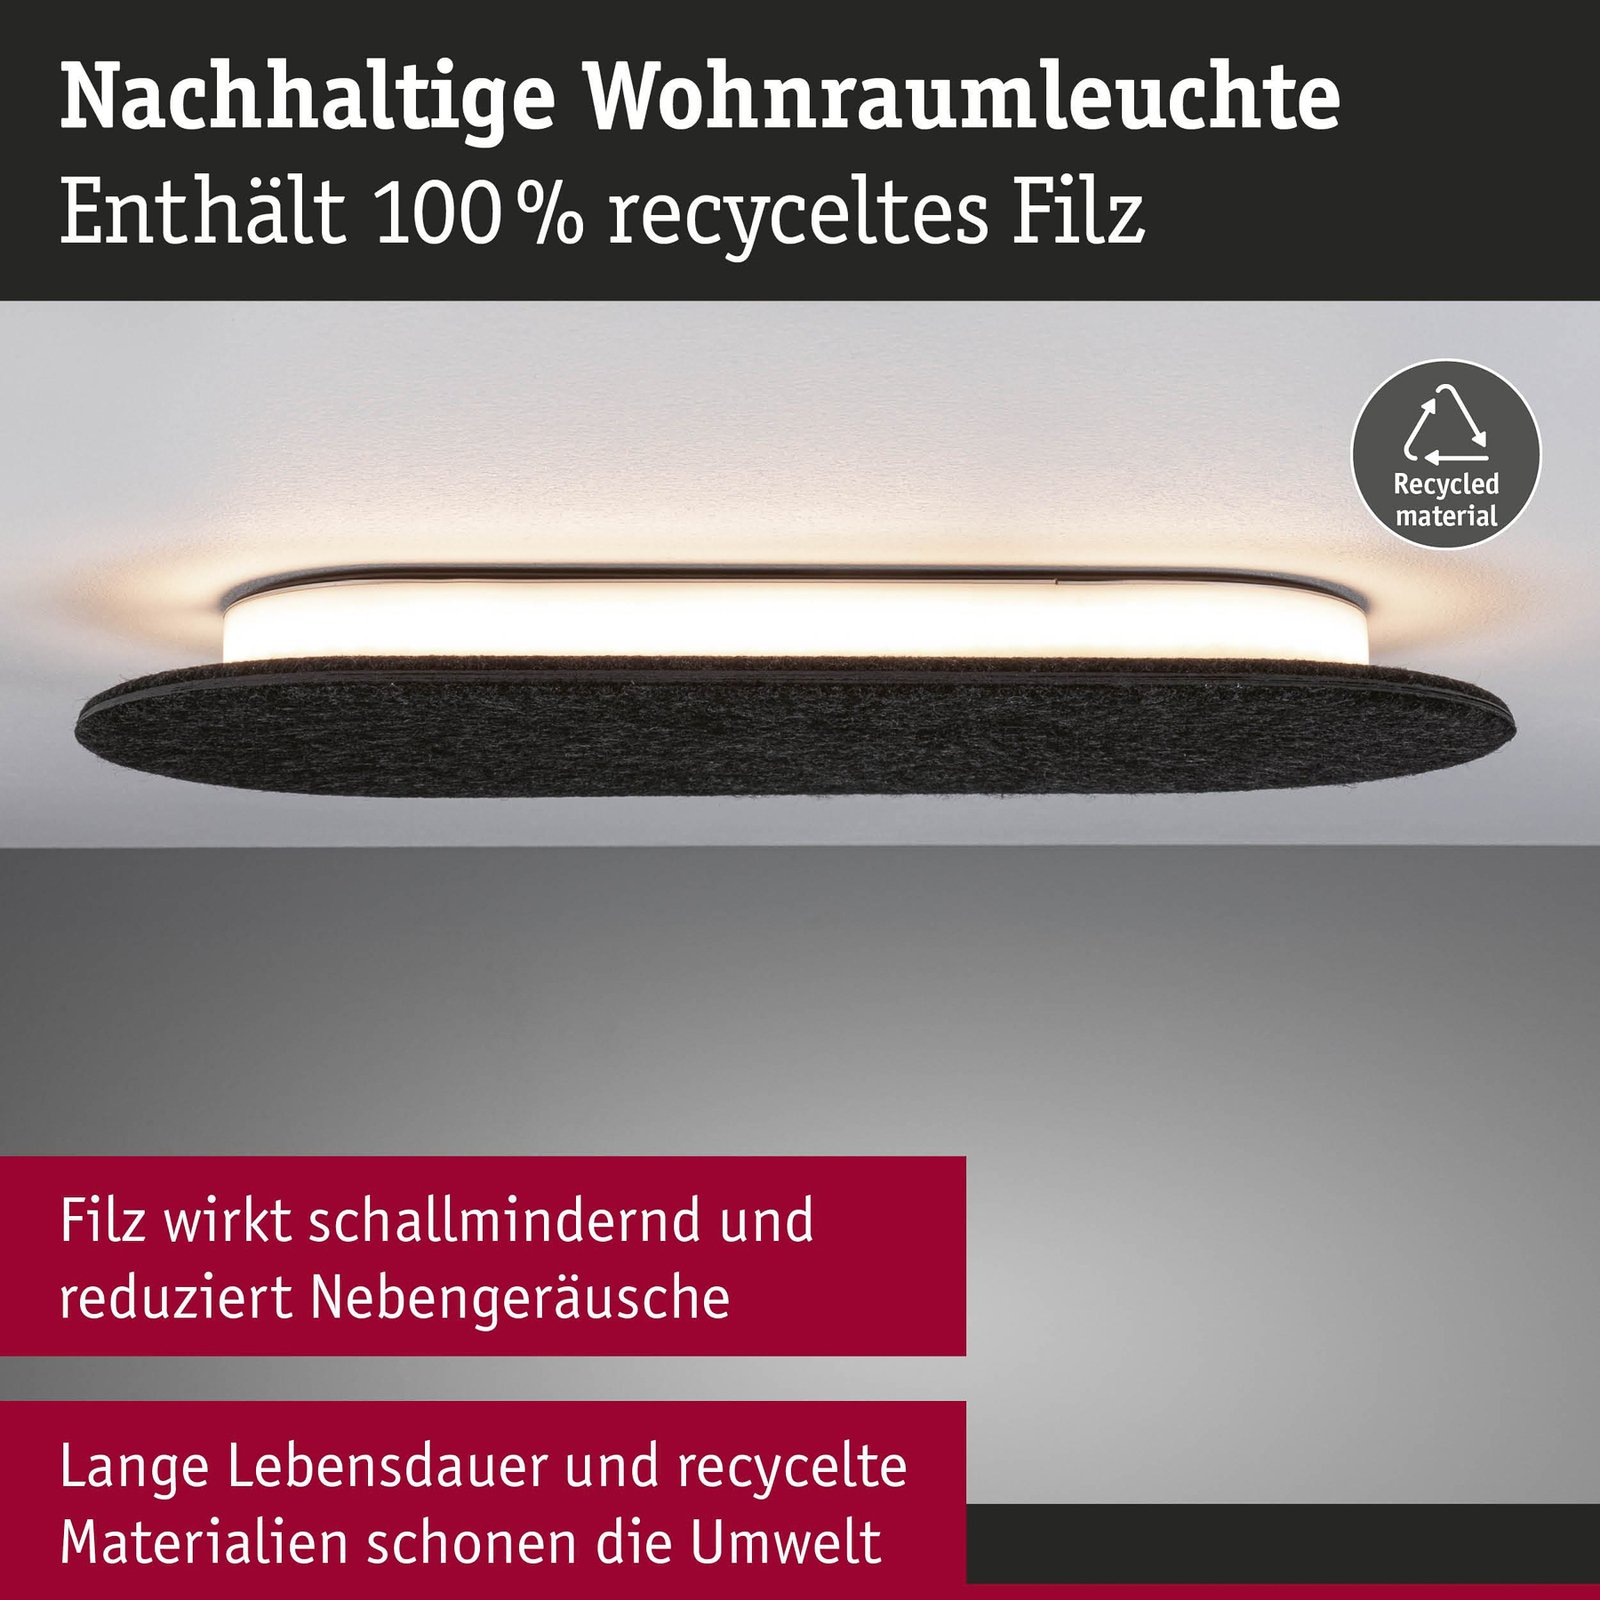 Nástenné svietidlo Paulmann LED Tulga, 45 x 20 cm, antracitová farba, plsť